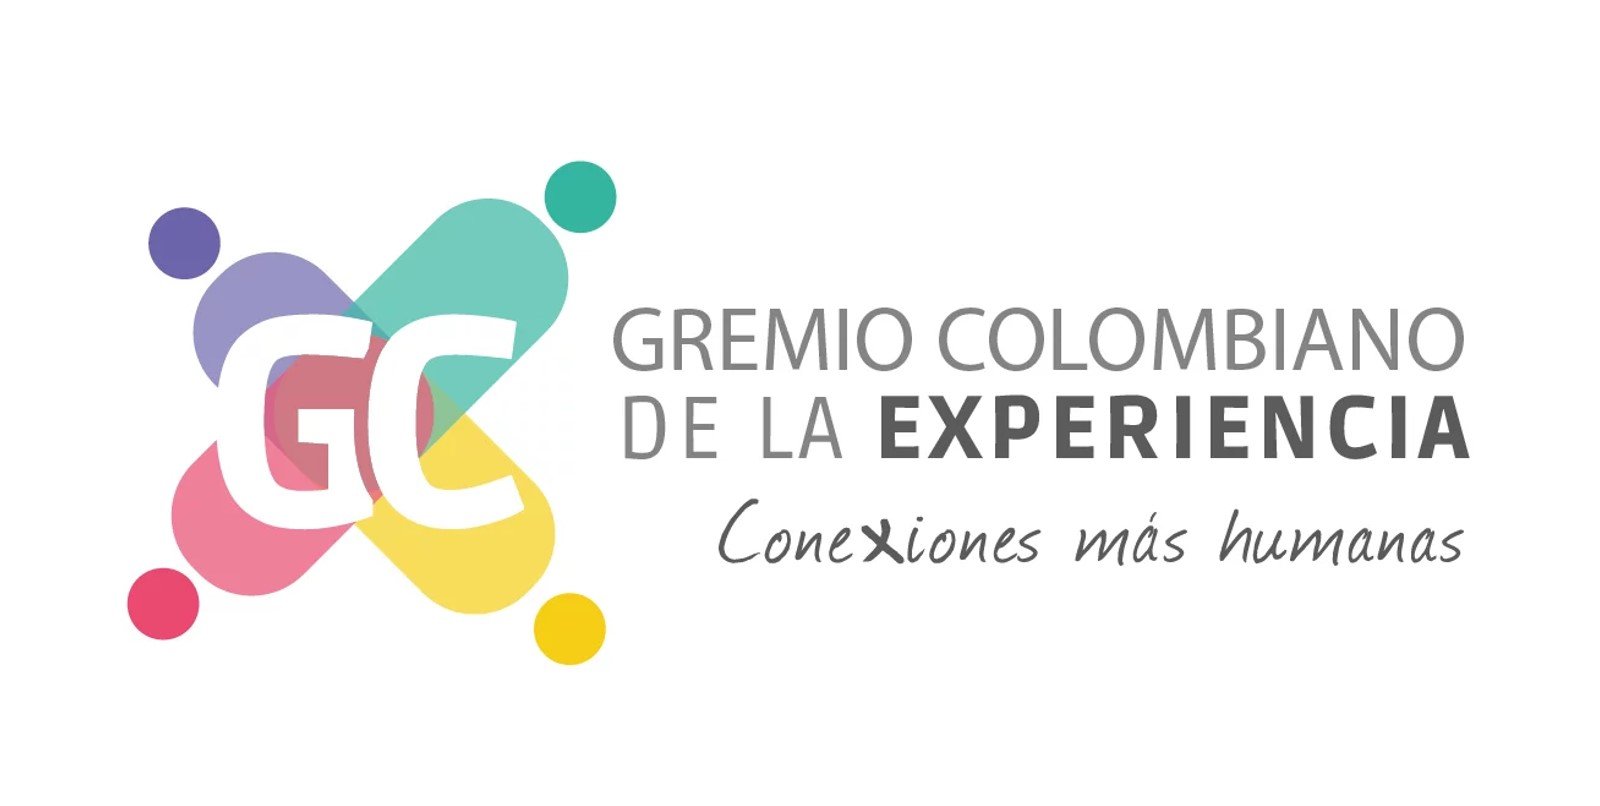 Gremio Colombiano de la Experiencia logo.jpg